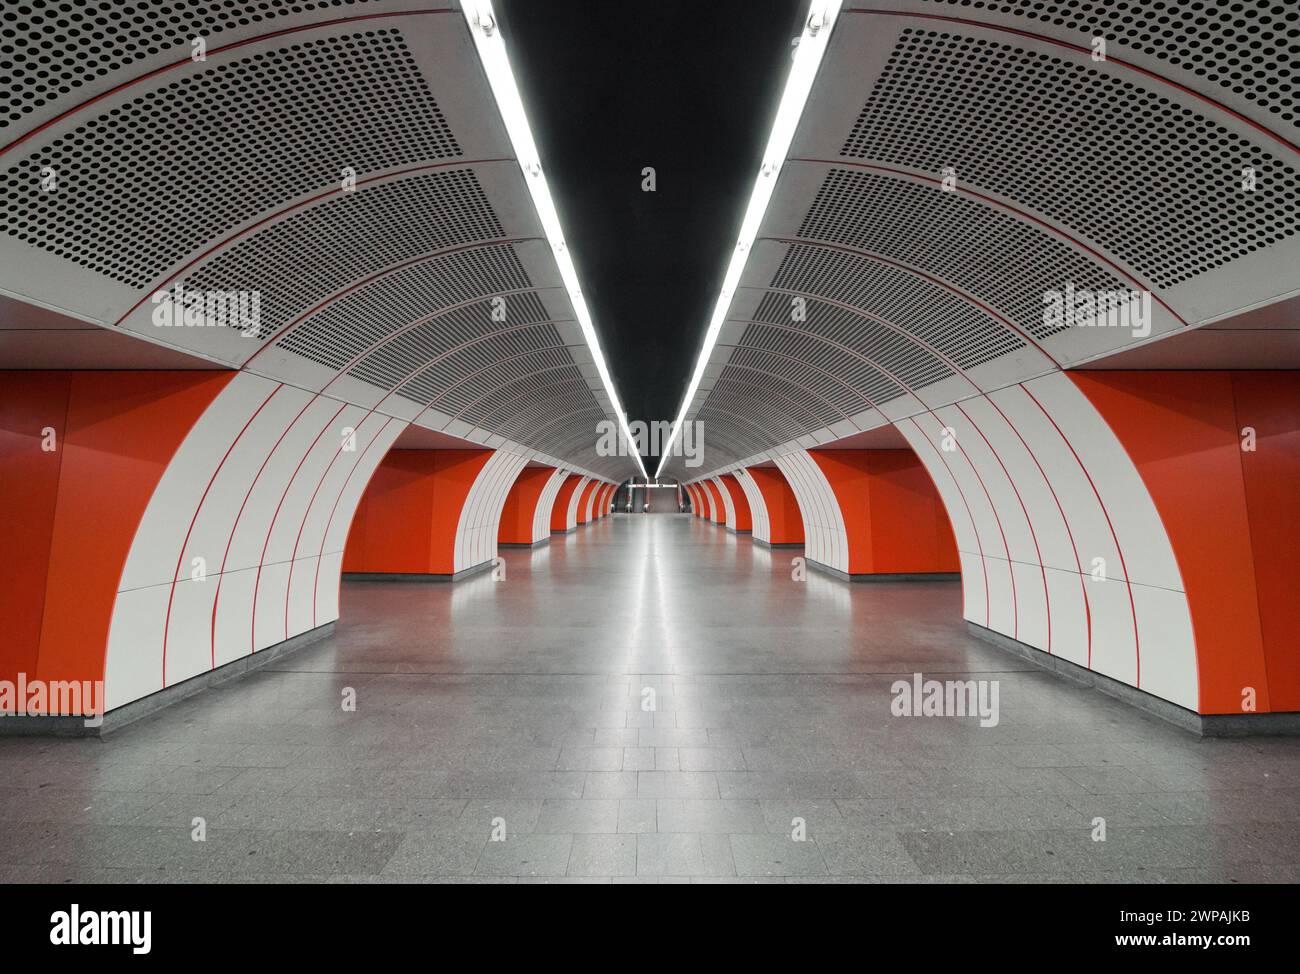 Station de métro moderne blanche et orange. Vue en perspective du hall vide entre les quais. Vue symétrique de l'allée de la station souterraine en forme d'arc. Banque D'Images